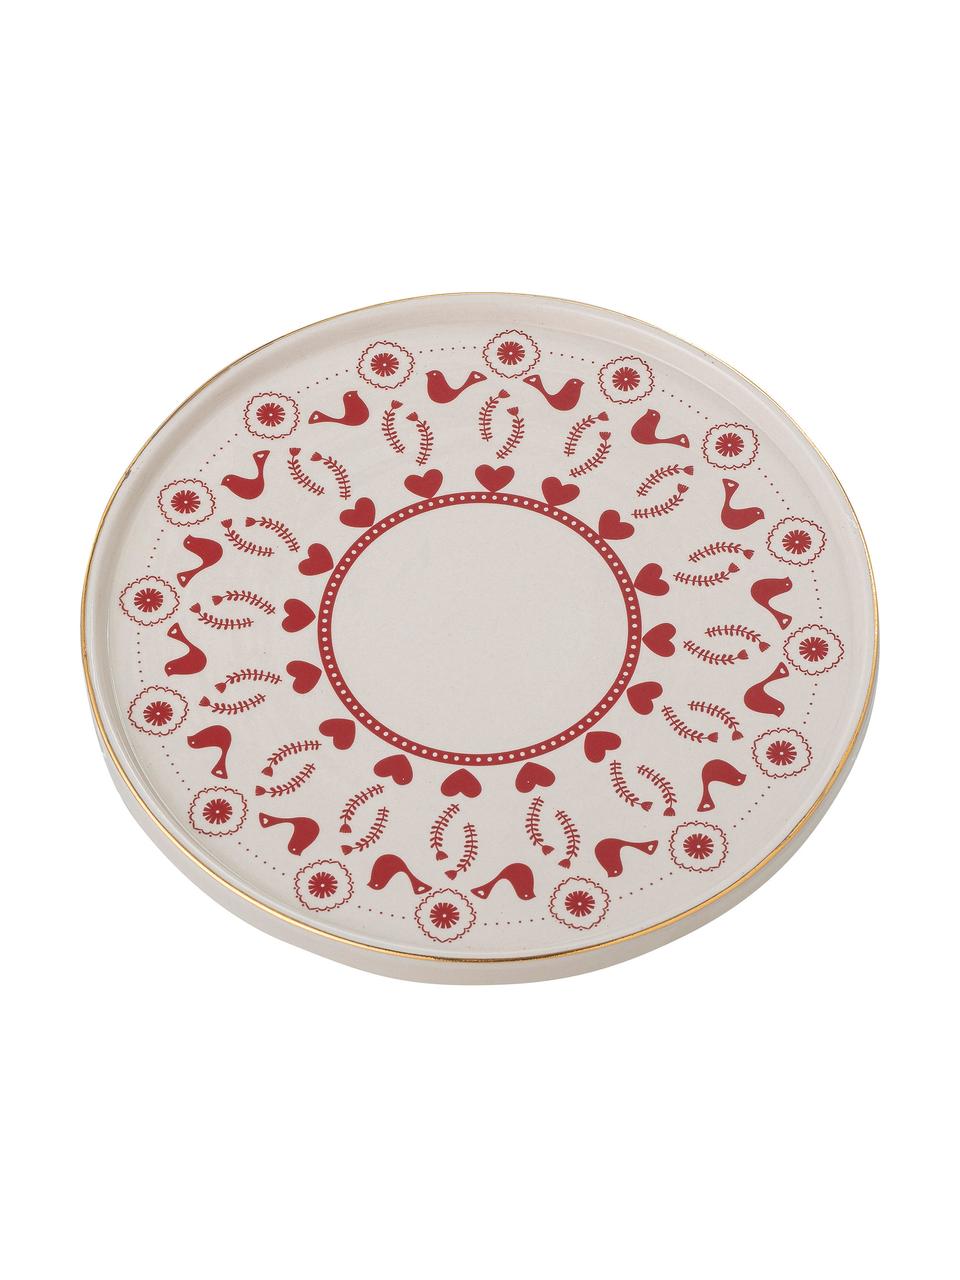 Tortenplatte Jolly aus Steingut mit winterlichen Motiven und Goldrand, Ø 26 cm, Steingut, Rot, Weiß, Ø 26 x H 7 cm